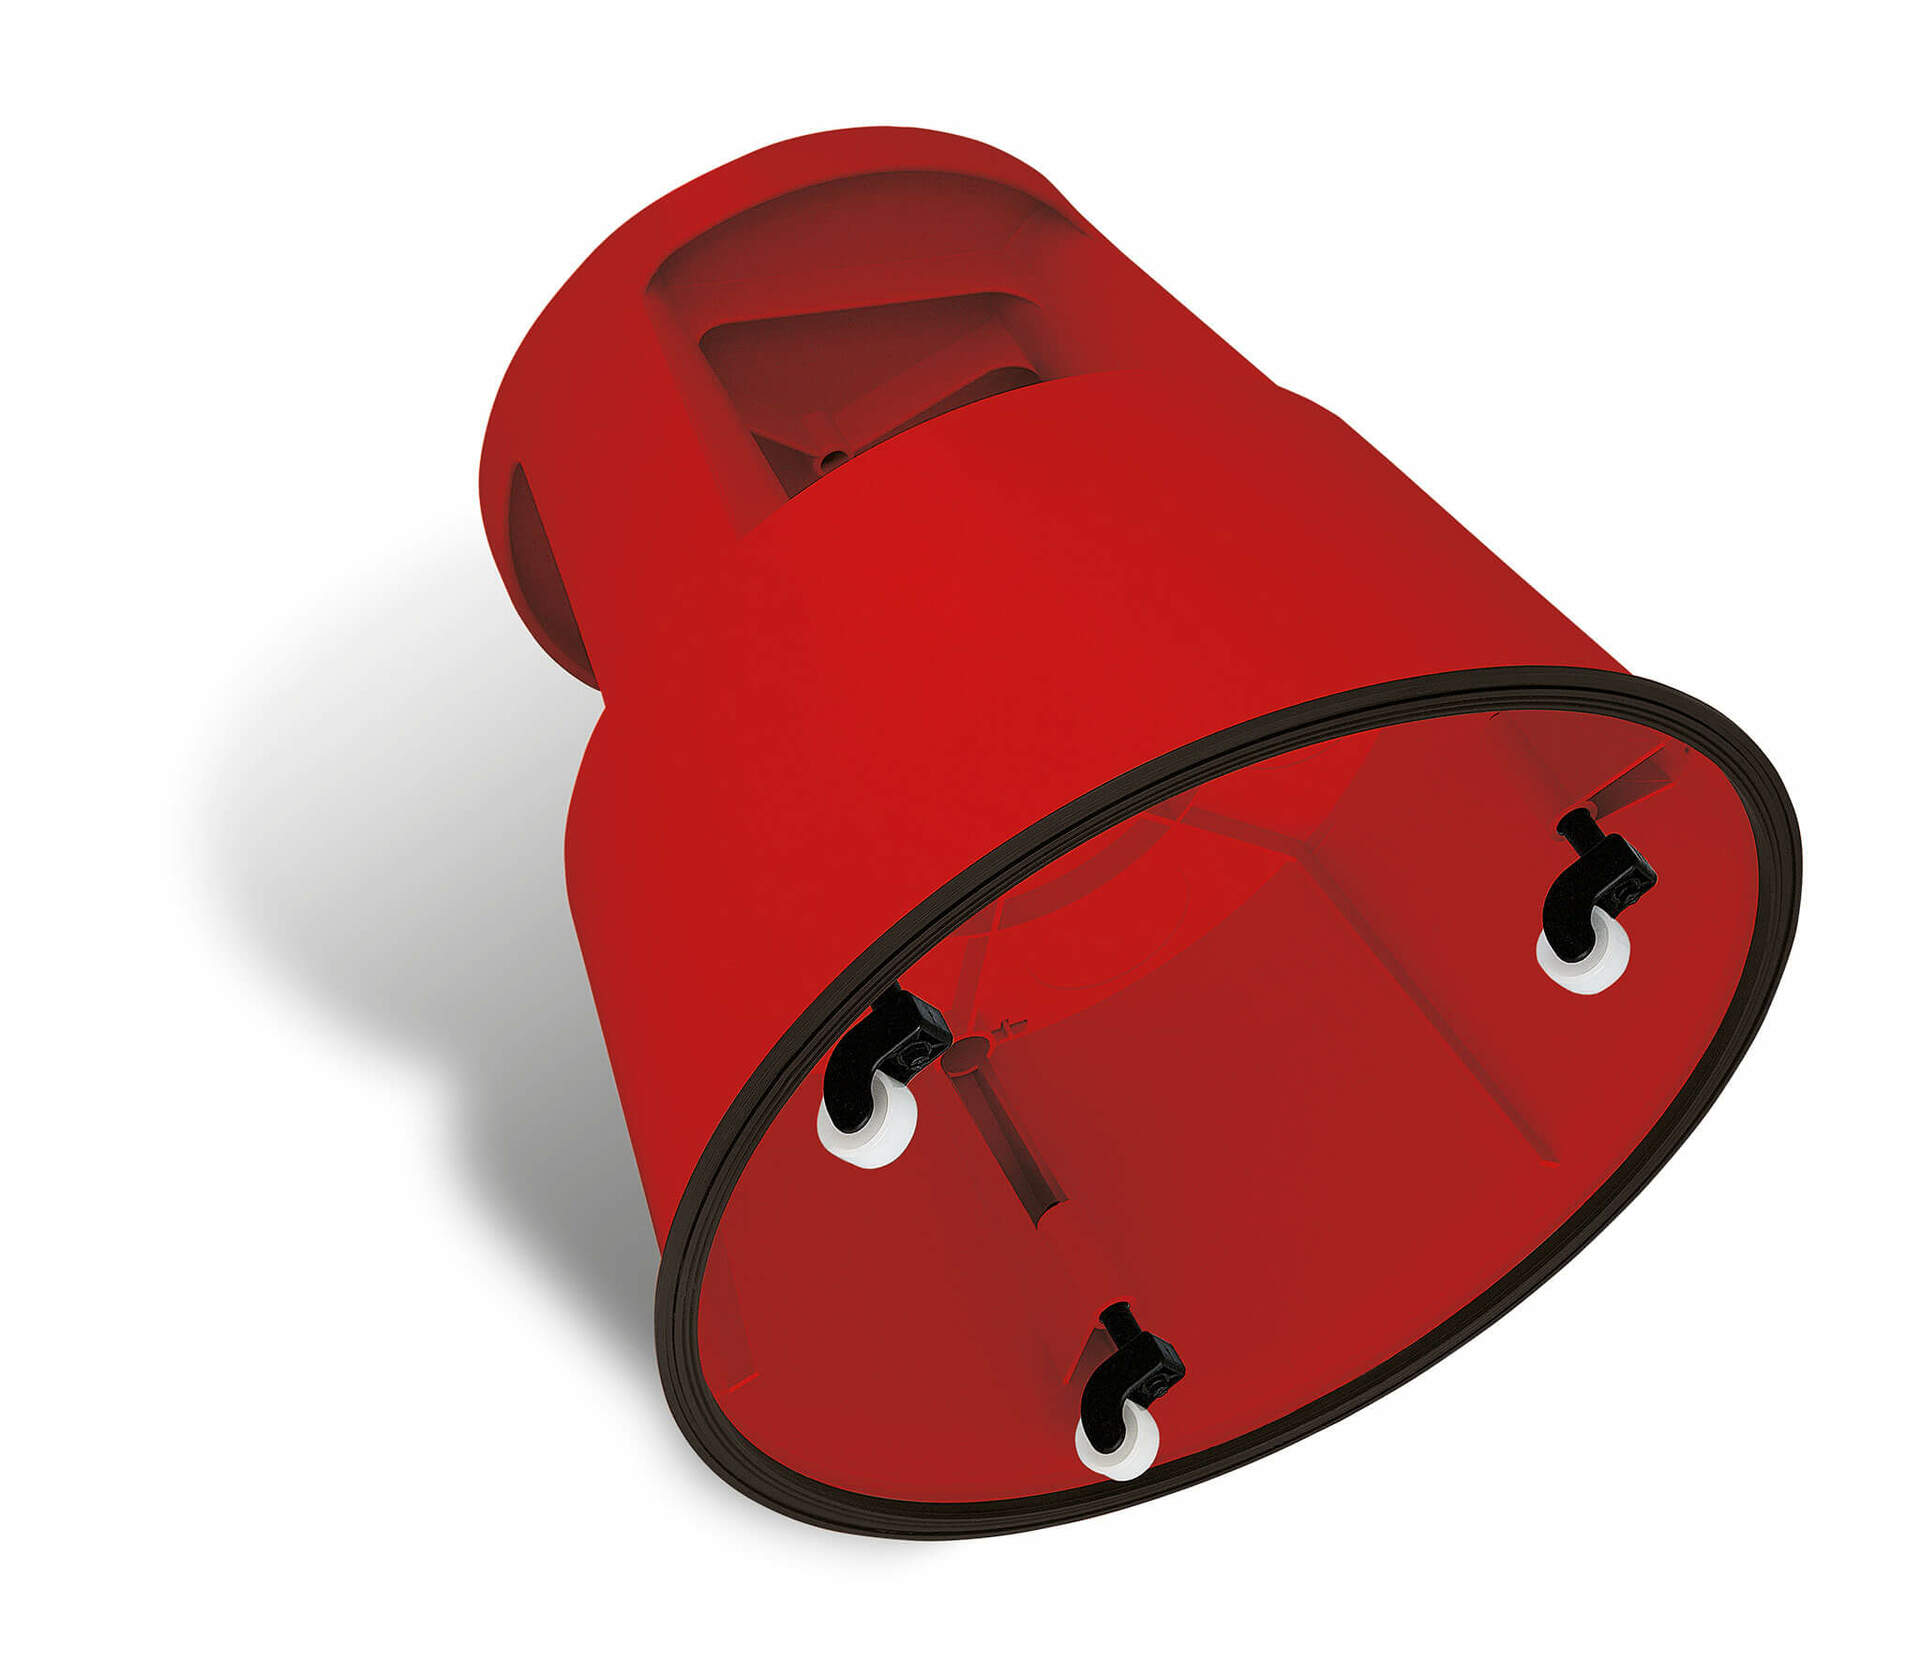 Rote WEDO-Schiebeplattform aus Kunststoff